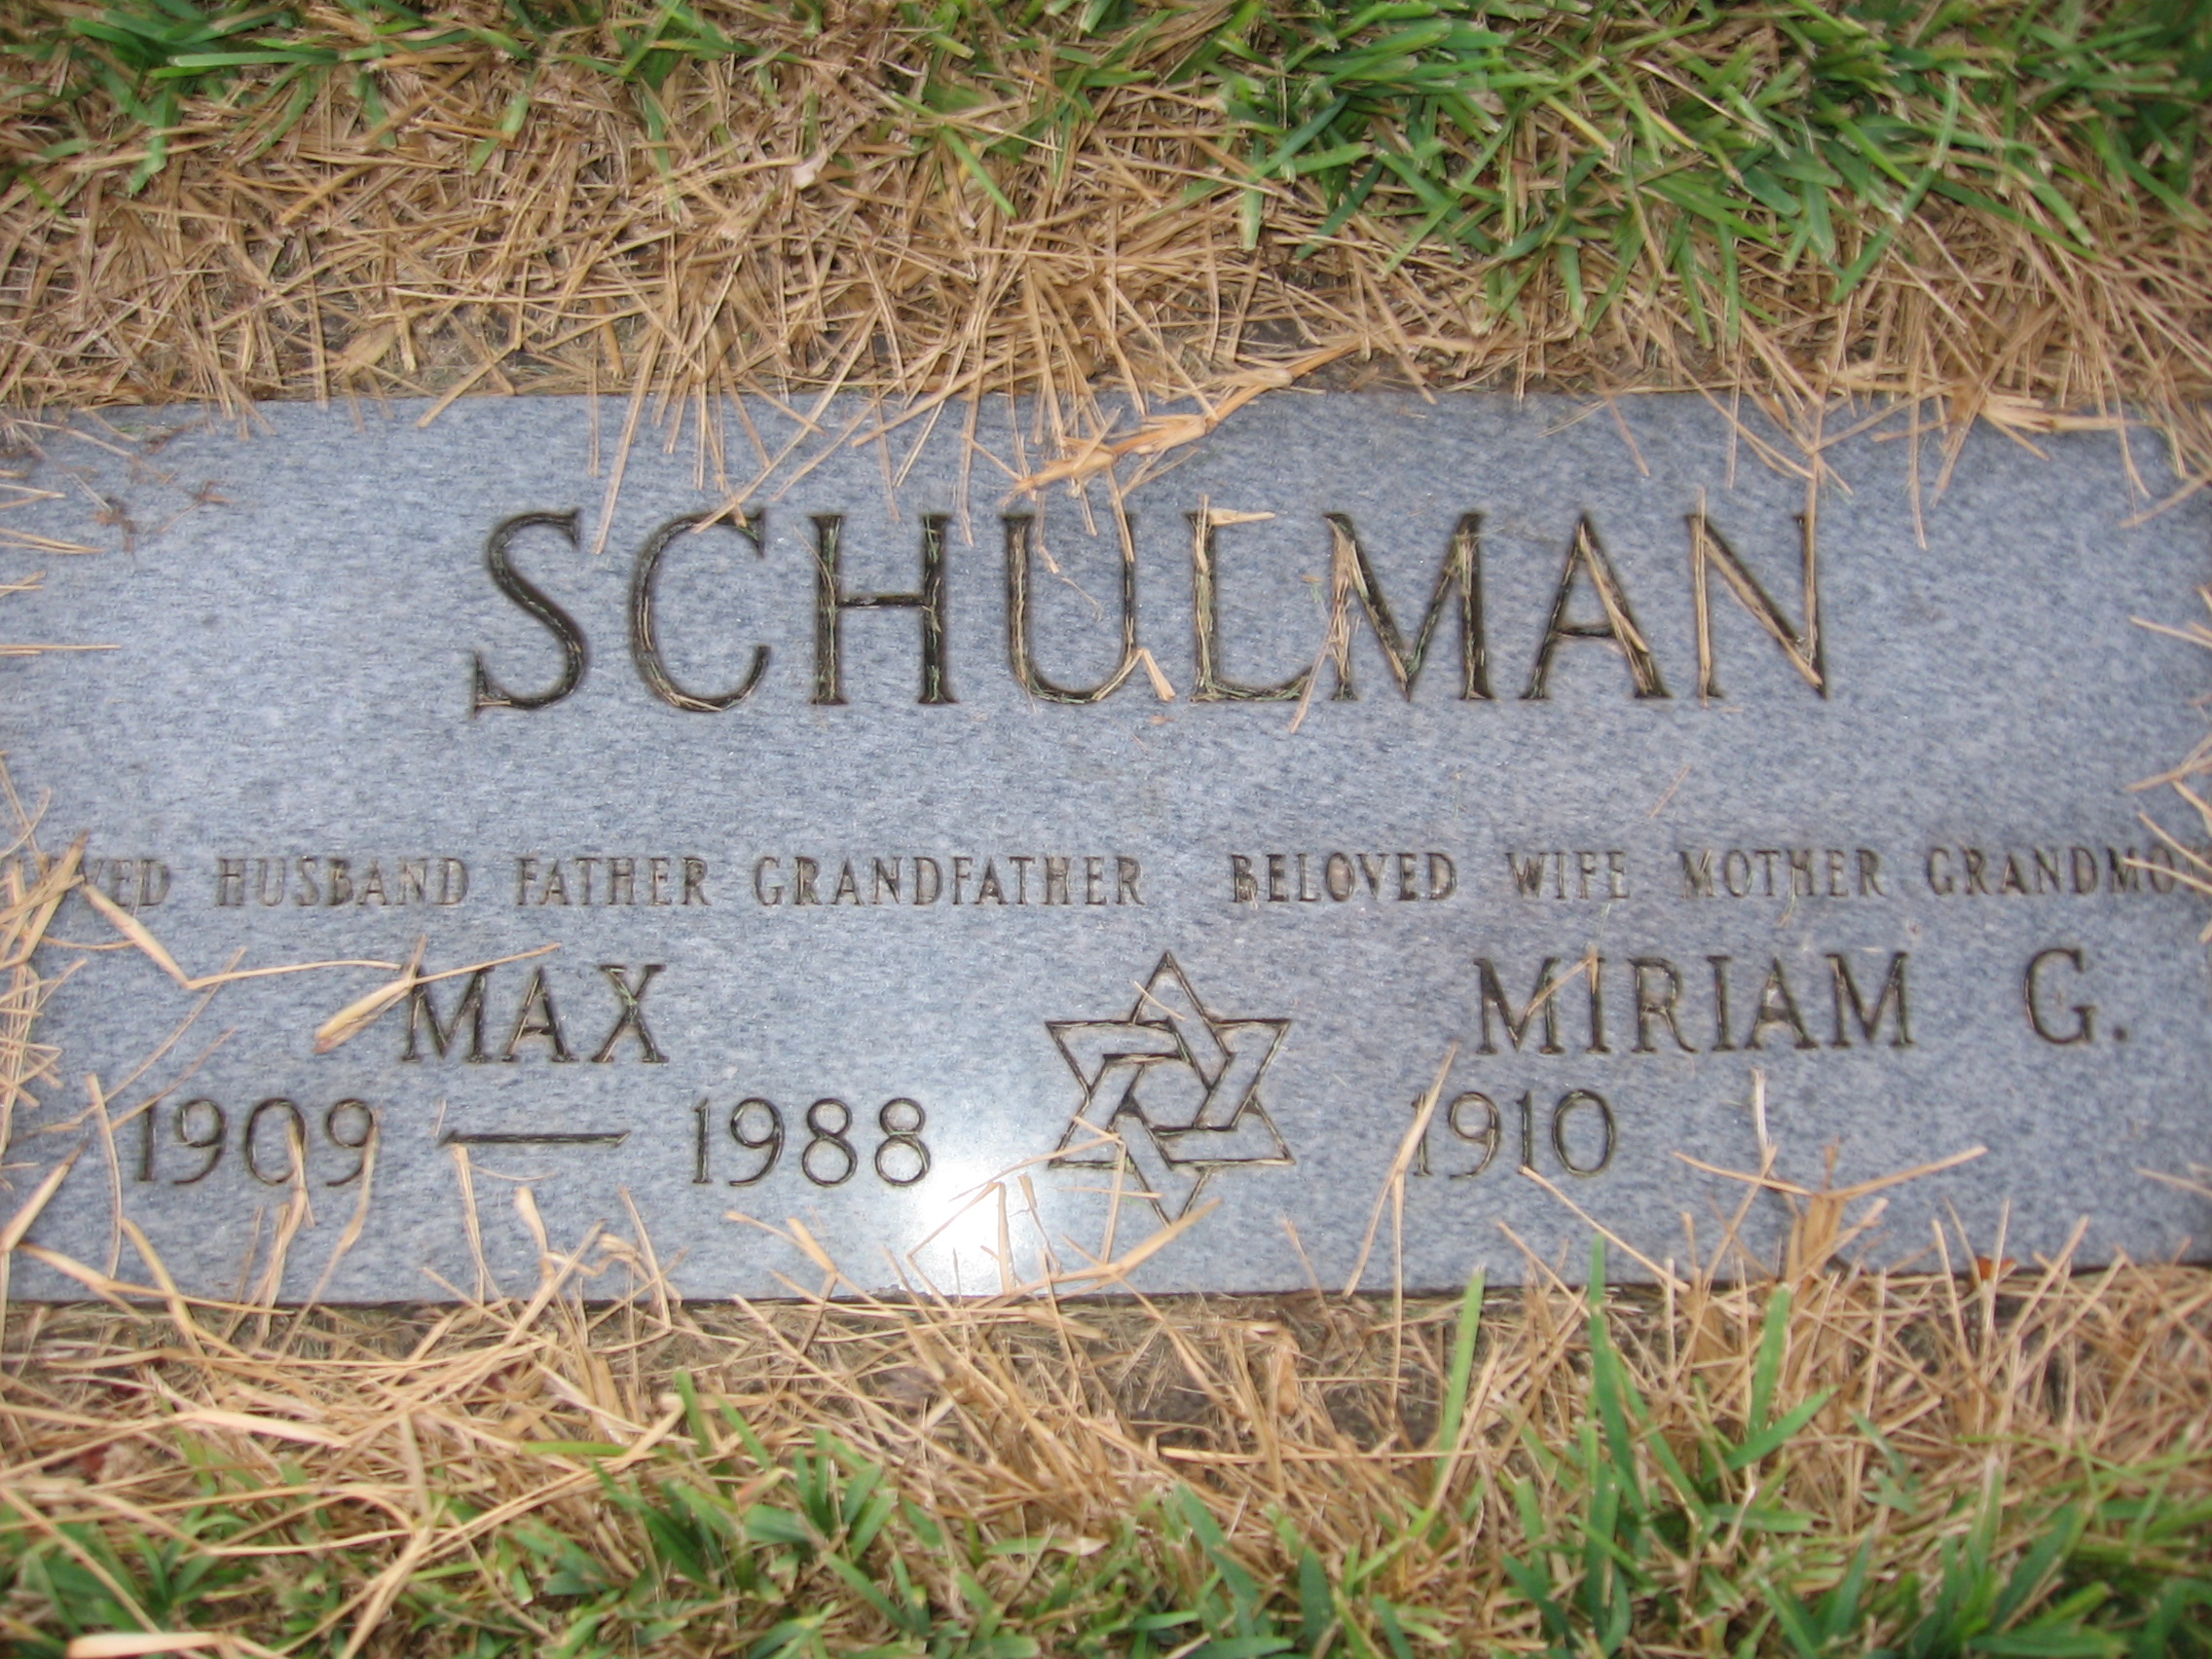 Max Schulman